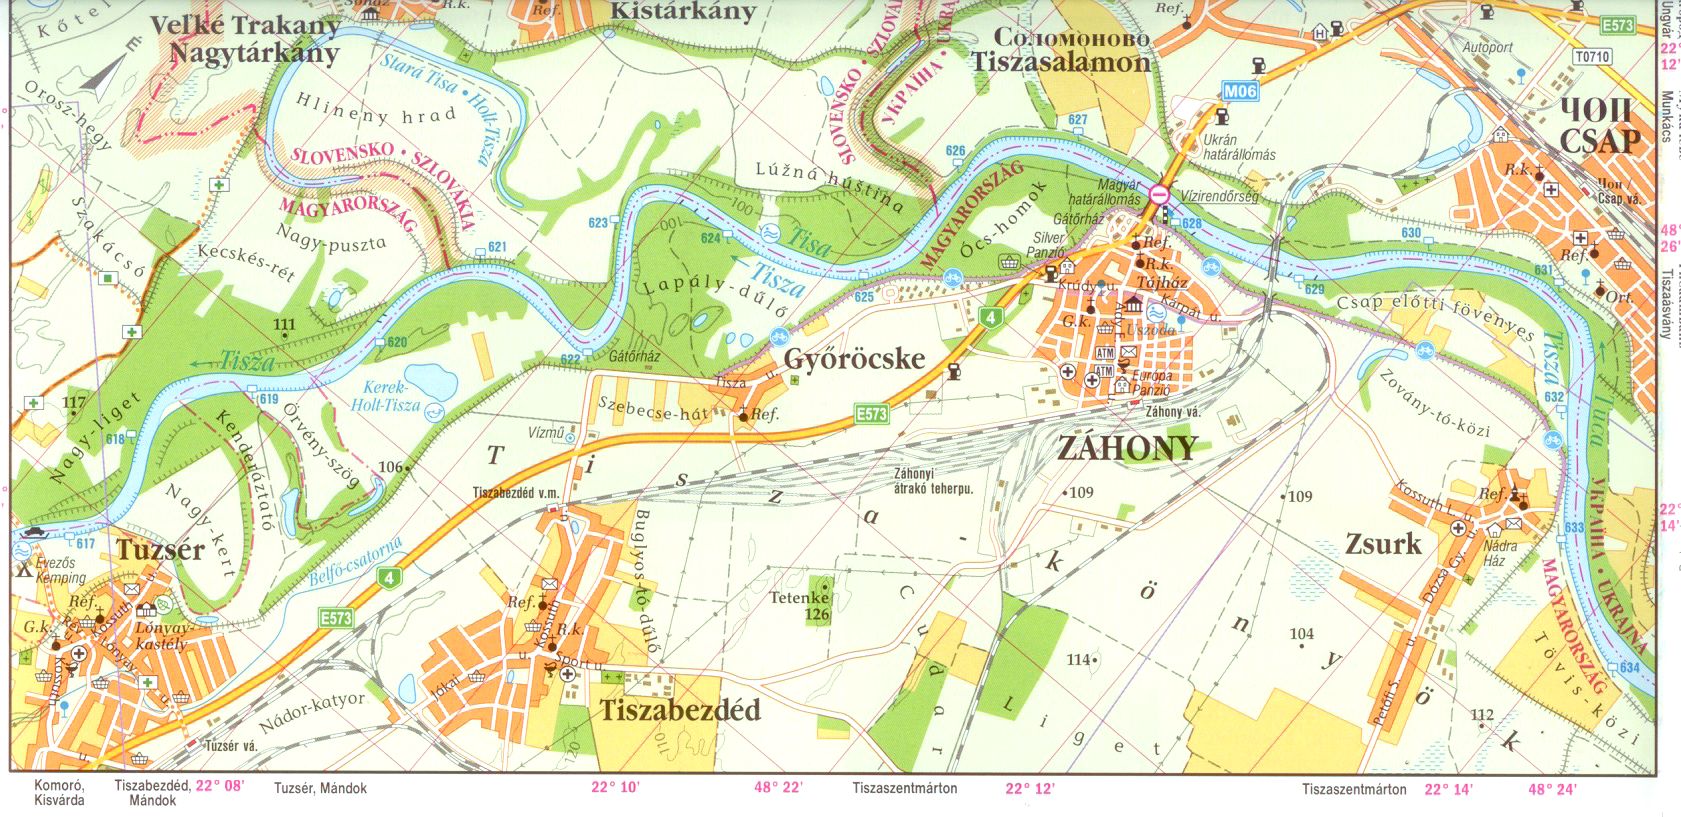 Tisza 633-542 1:60.000 sample map